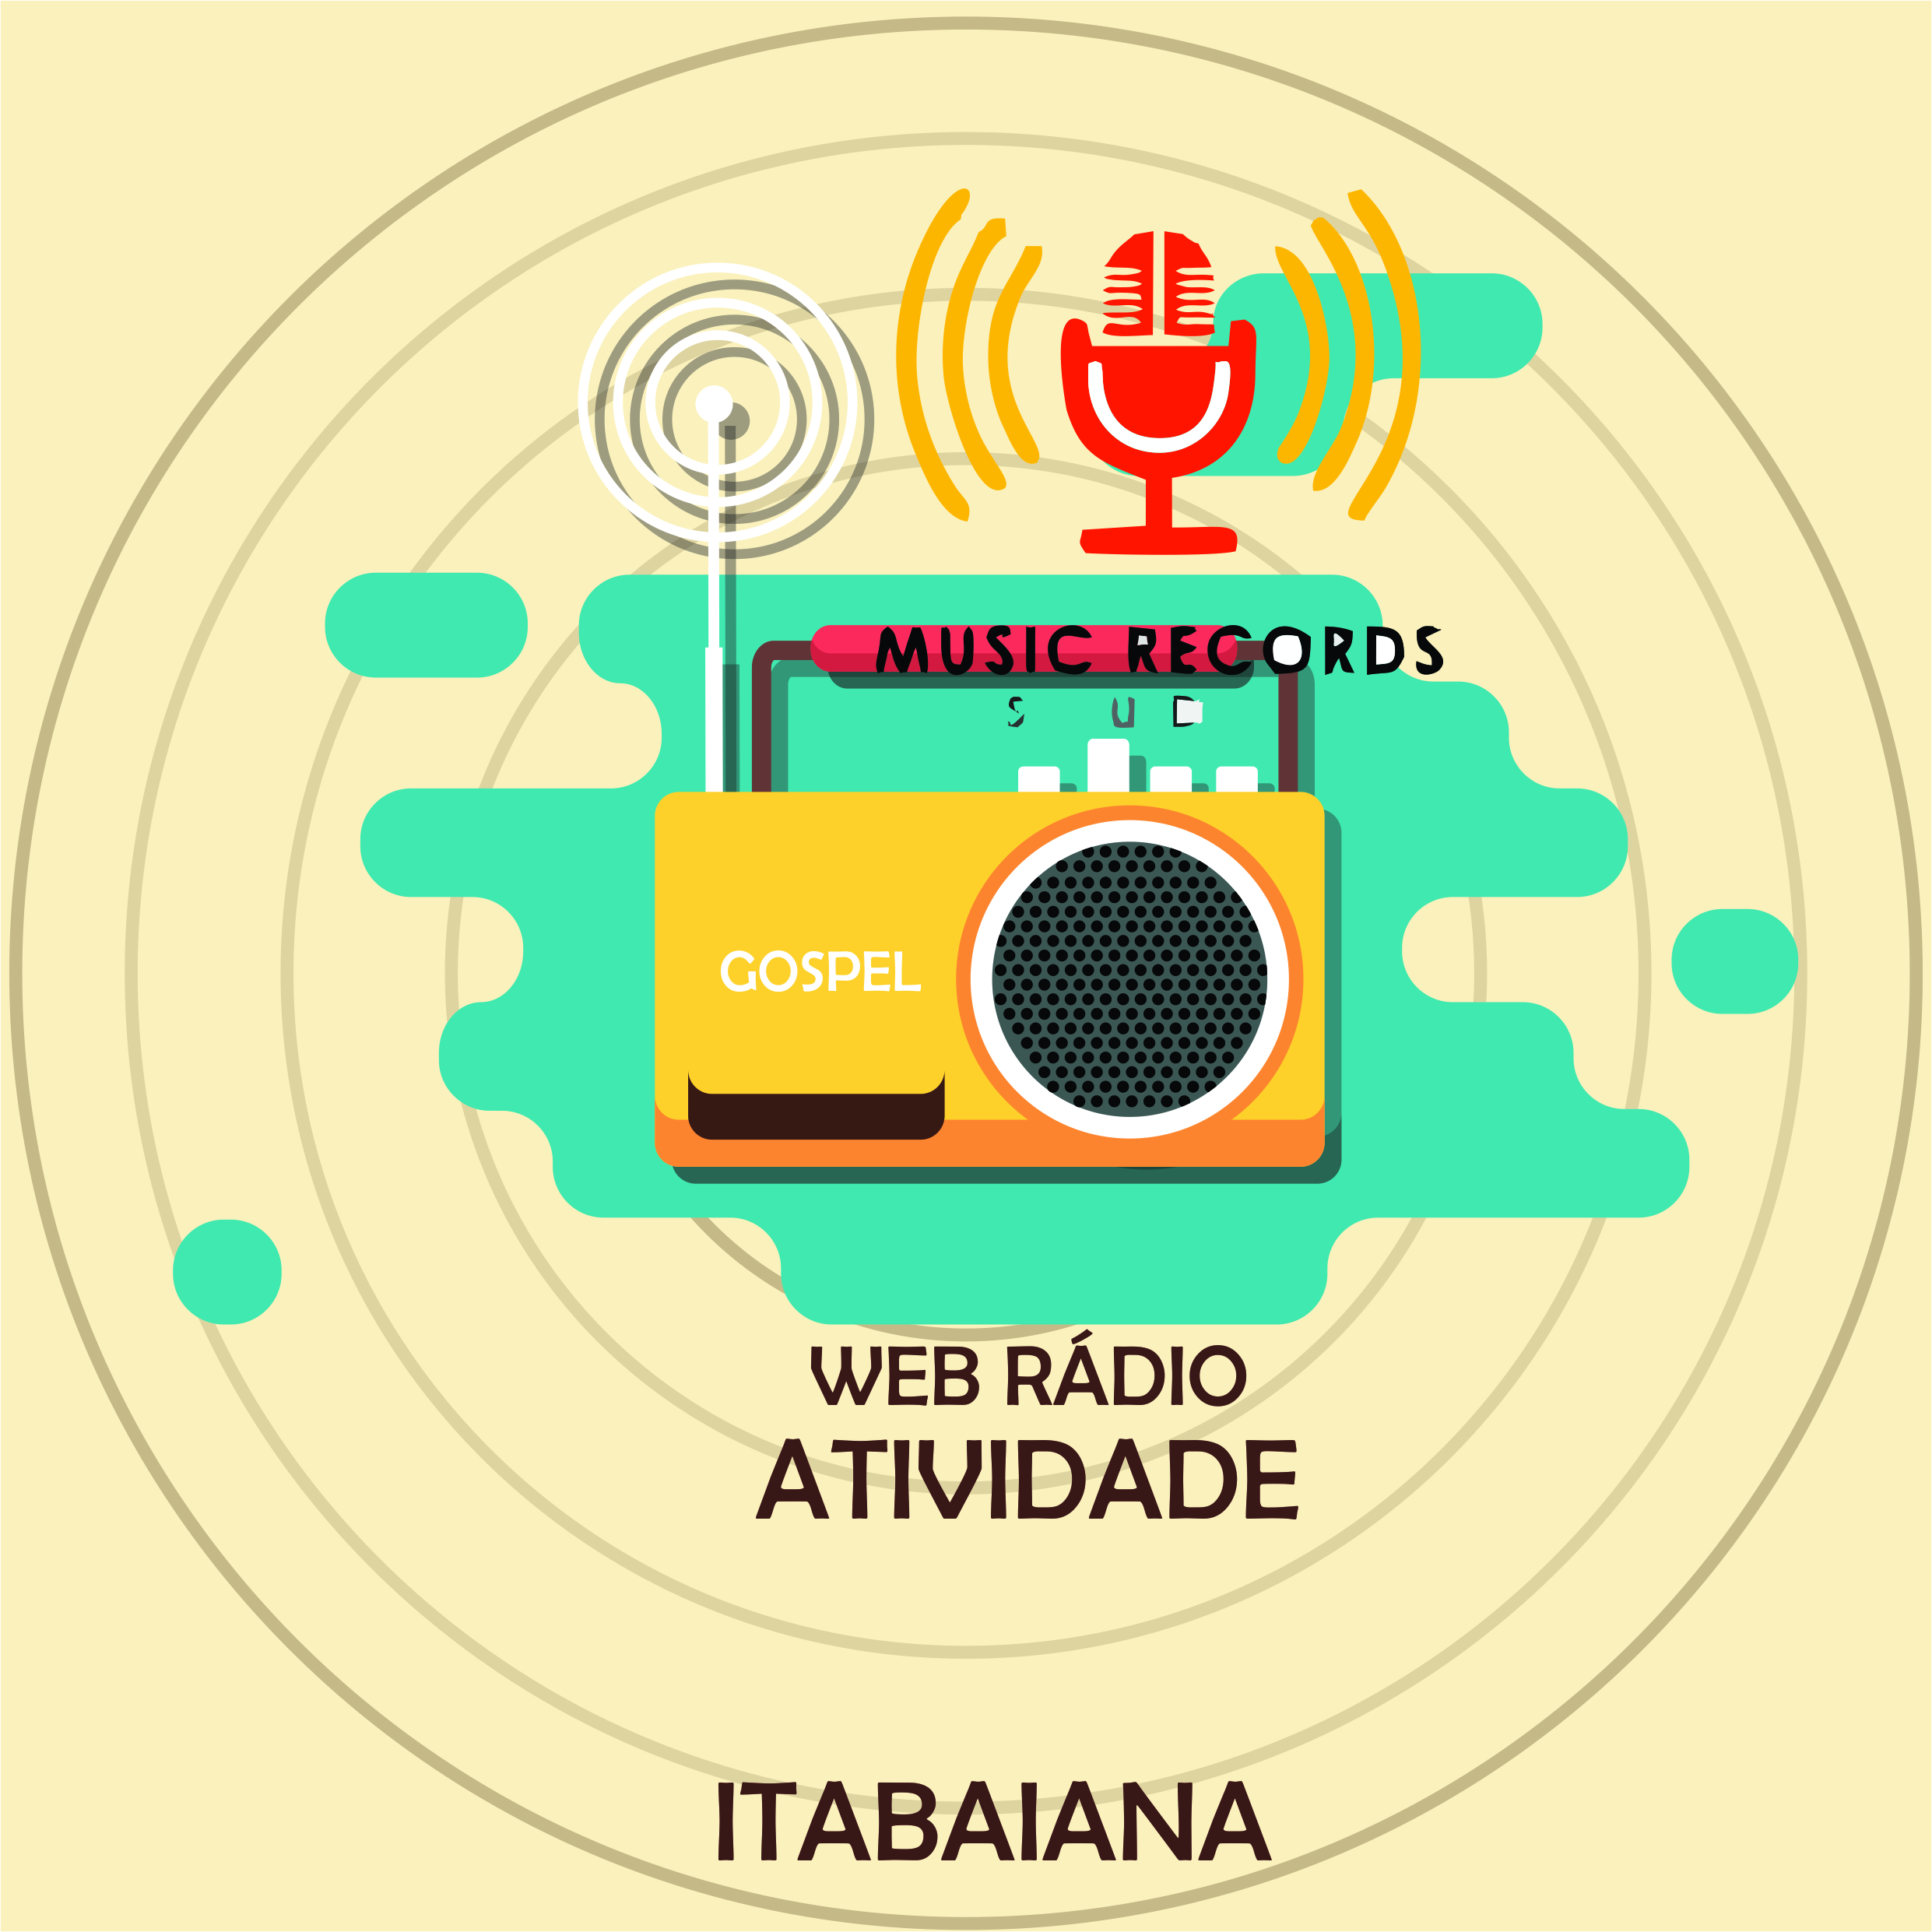 Web Rádio Atividade Itabaiana Só as melhores Gospel